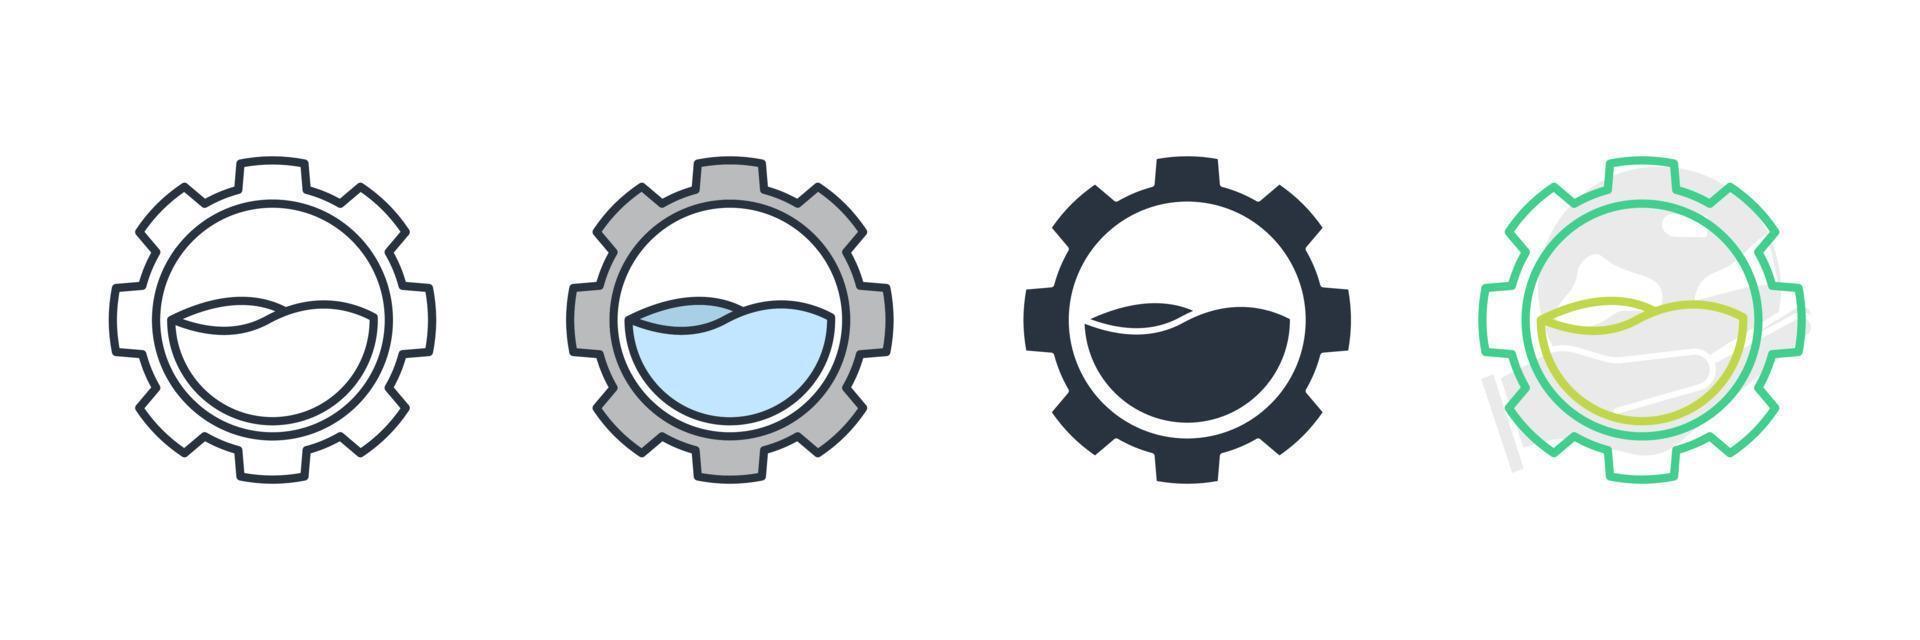 ilustração em vetor logotipo ícone de recursos hídricos. modelo de símbolo de recursos naturais para coleção de design gráfico e web